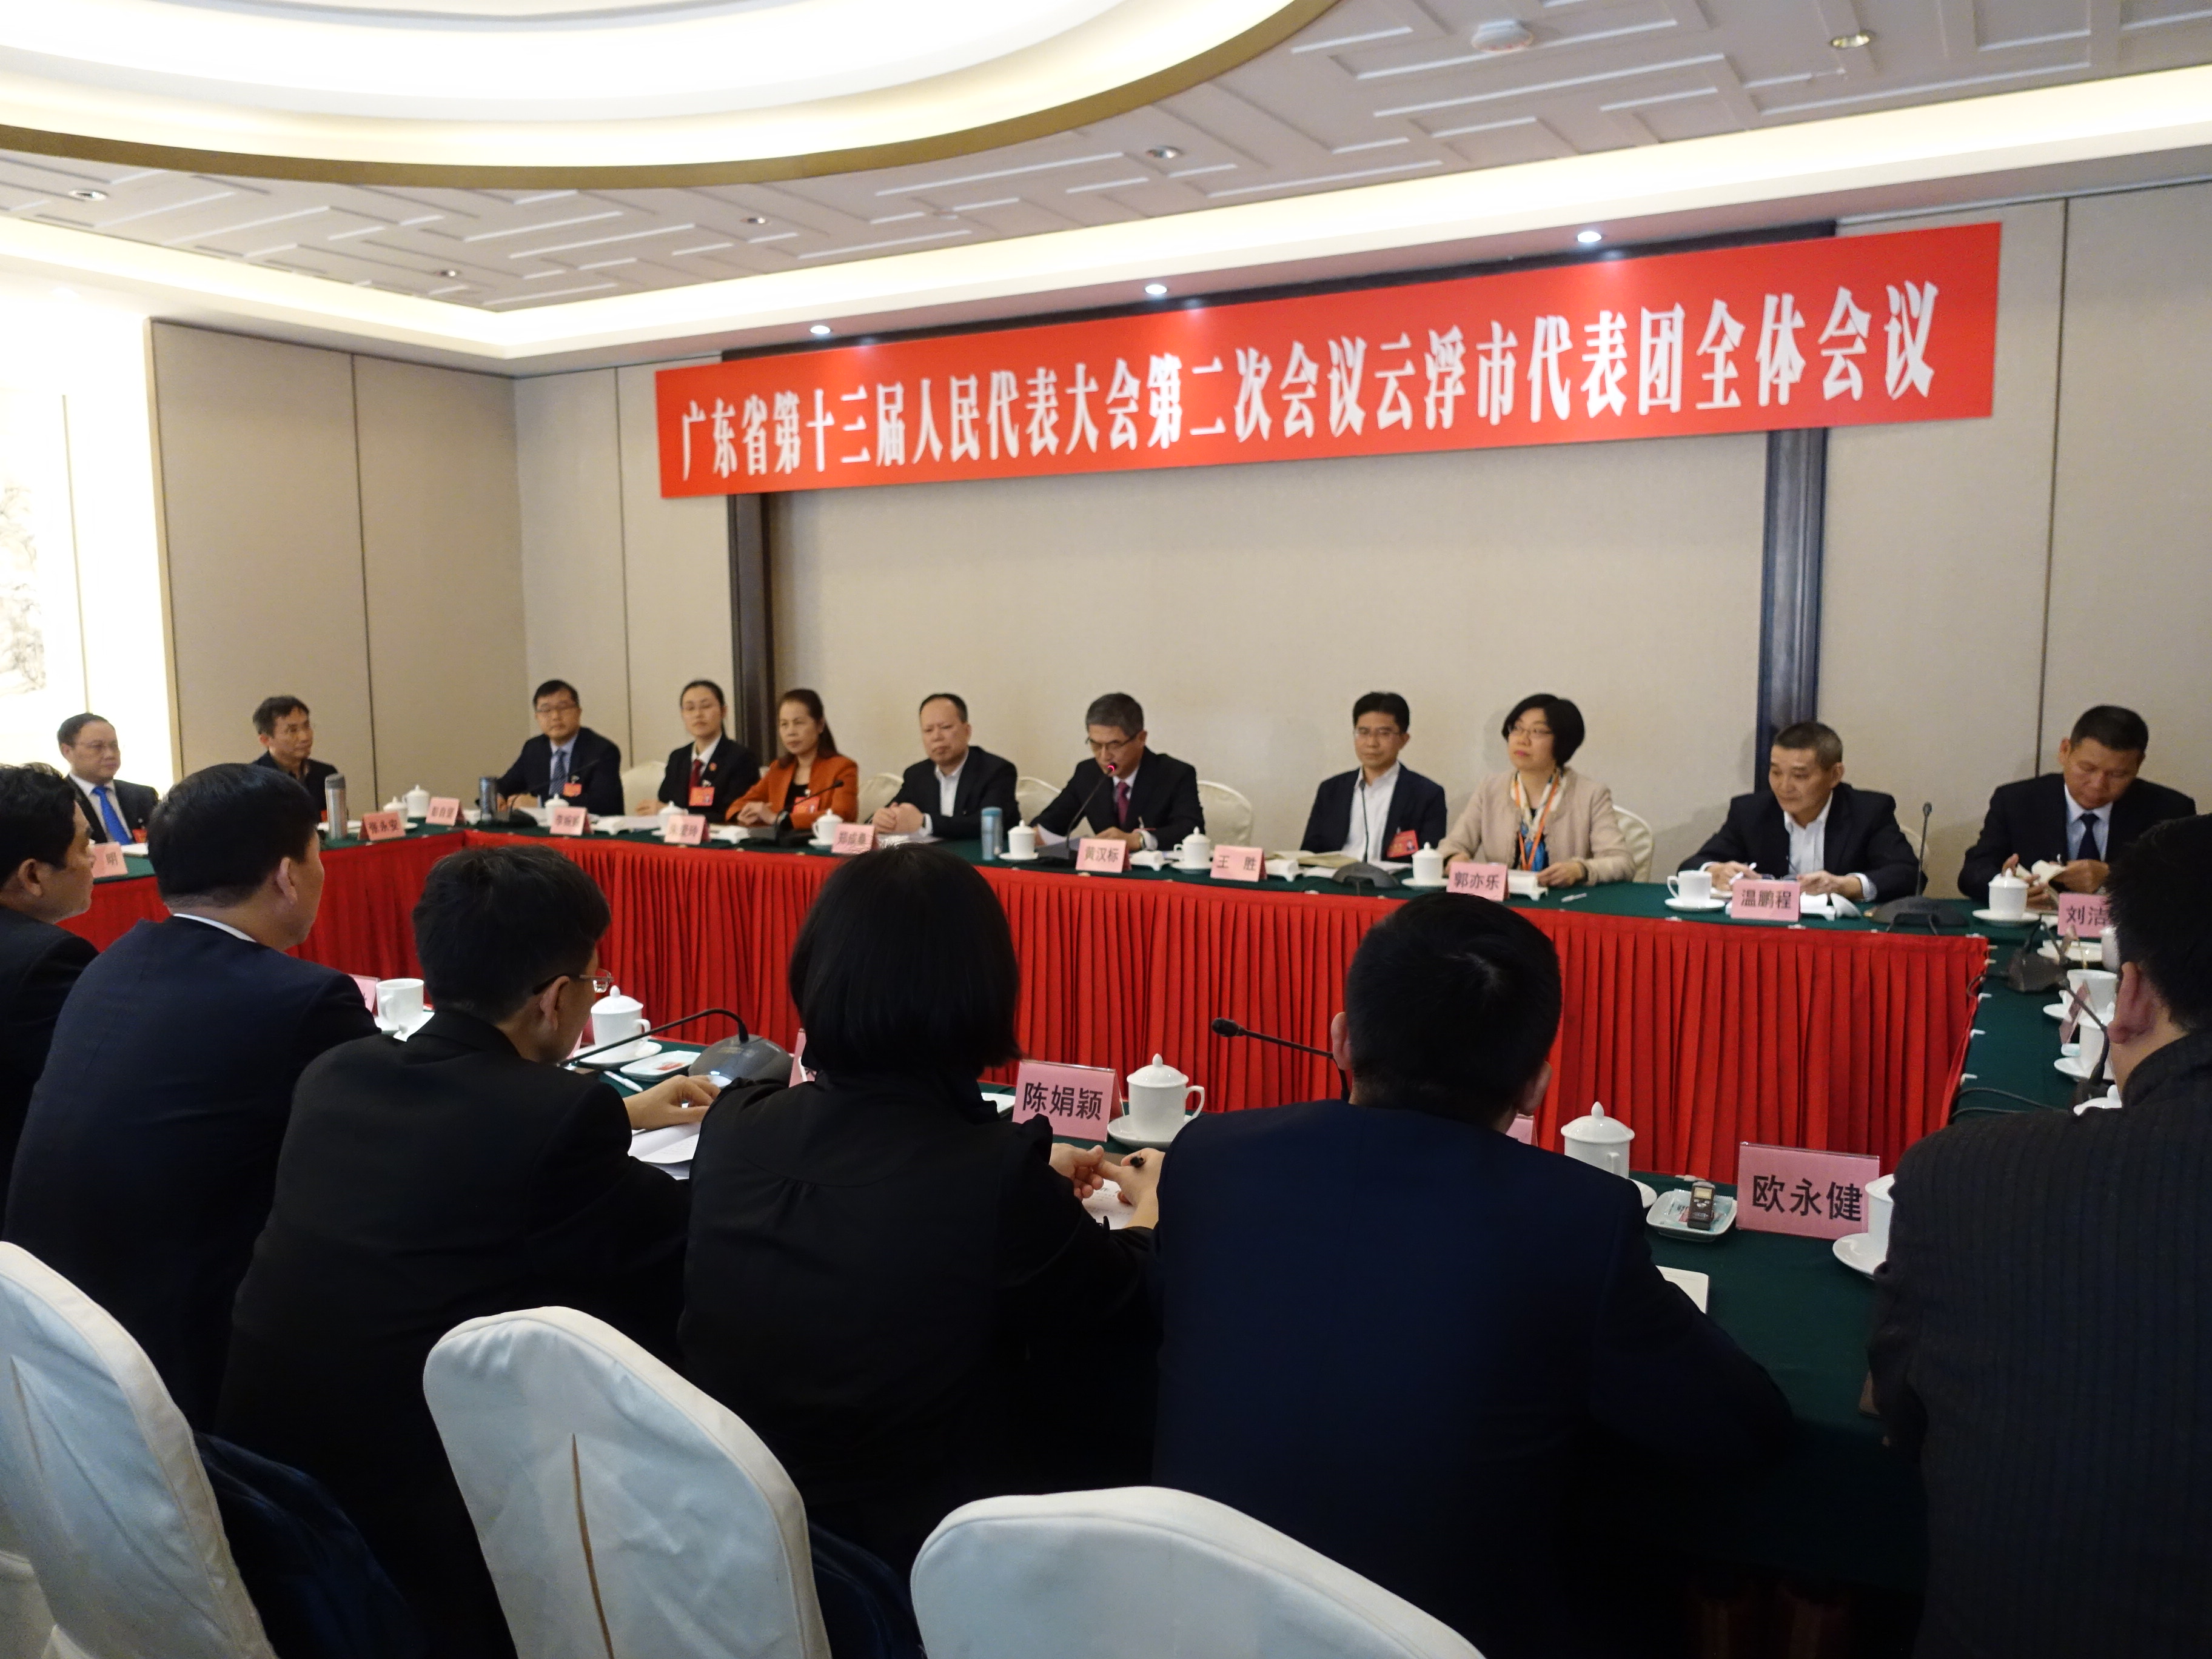 廣東省人大代表、雲浮市委書記黃漢標表示，雲浮發展將緊扣北部生態發展區的功能定位。